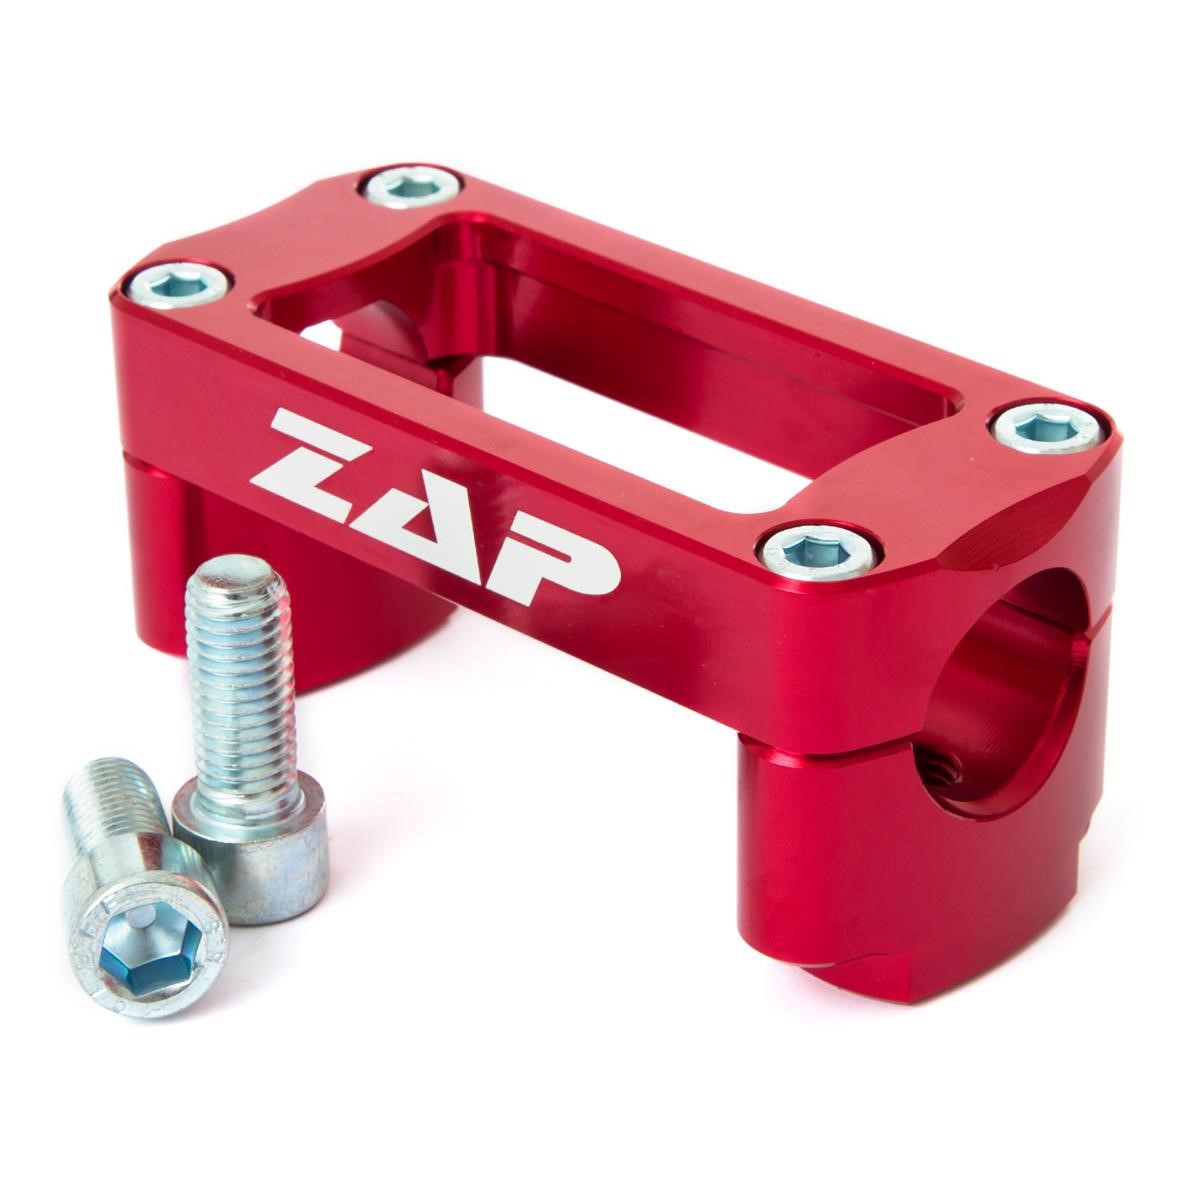 ZAP Anbaukit T-Bone rot eloxiert, für 28.6 mm Lenker, Höhe 55 mm